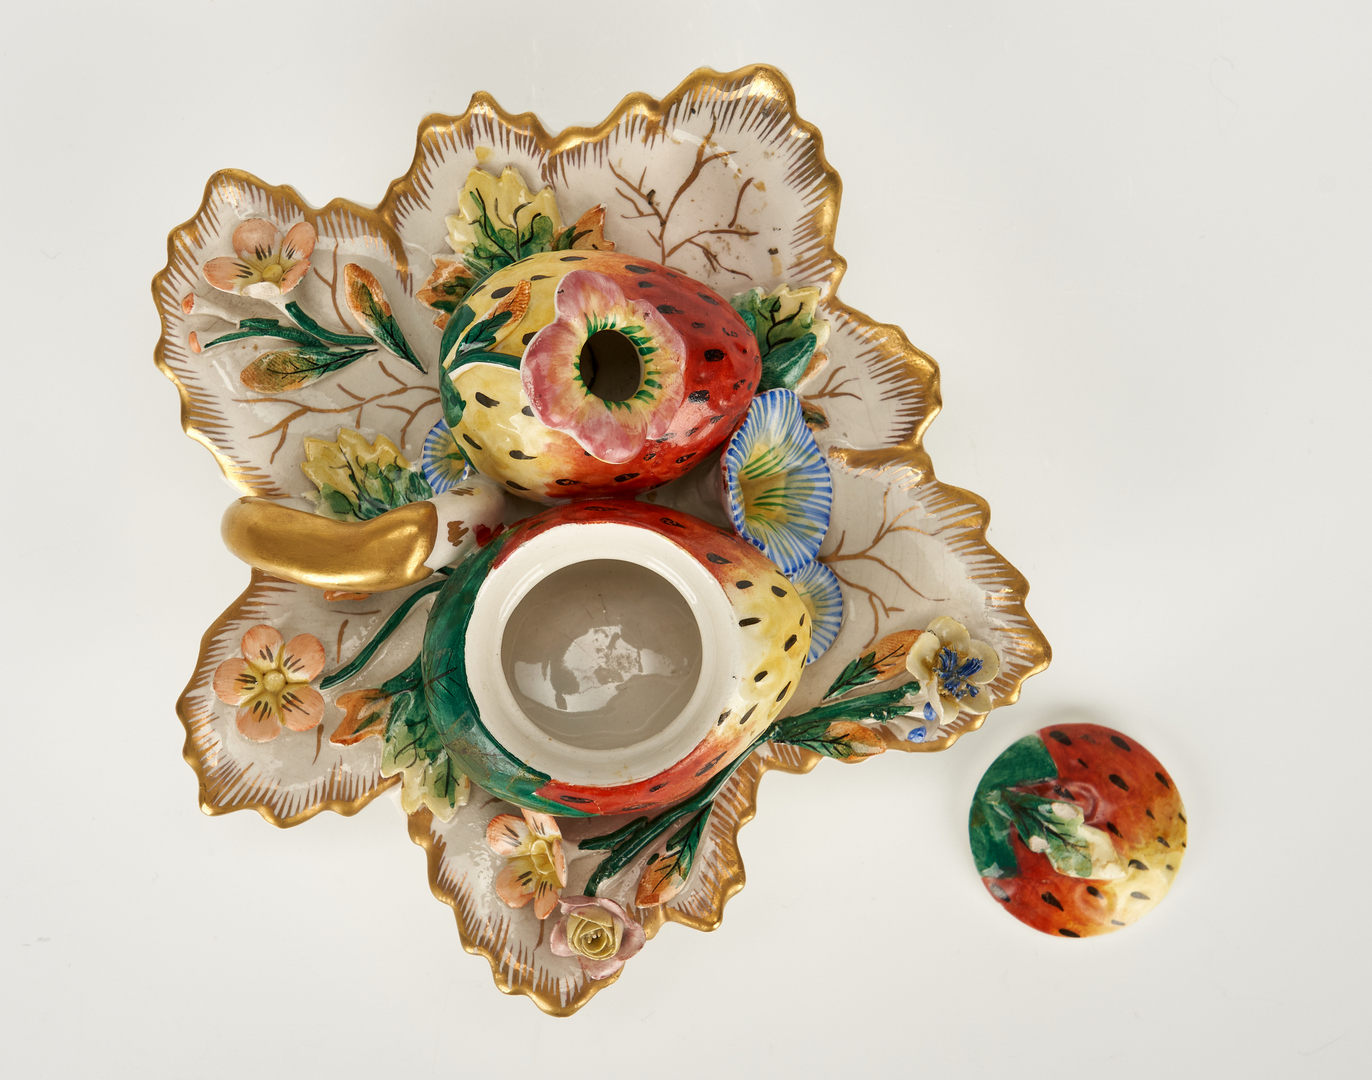 Lot 840: Lamps and decorative porcelain inc. Meissen, 5 items